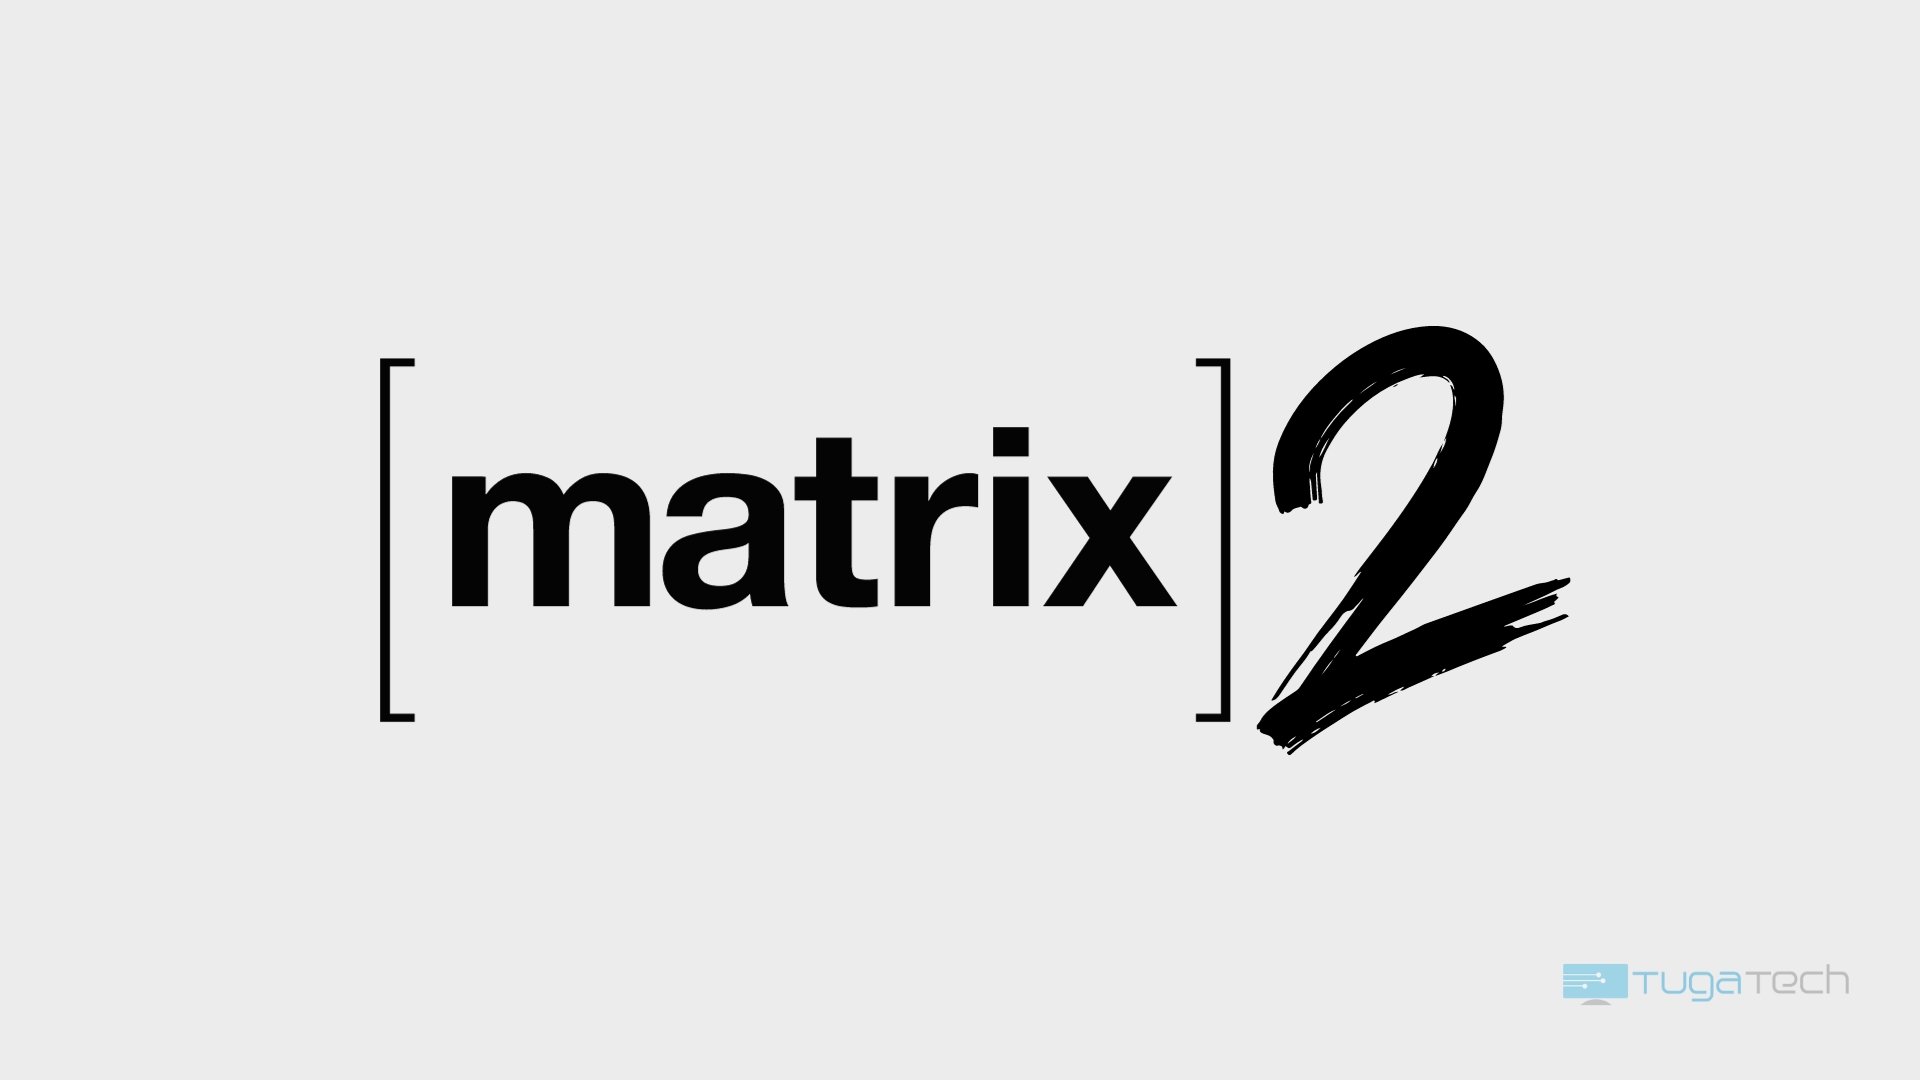 Matrix 2.0 chega com melhorias no sistema de comunicações e estabilidade